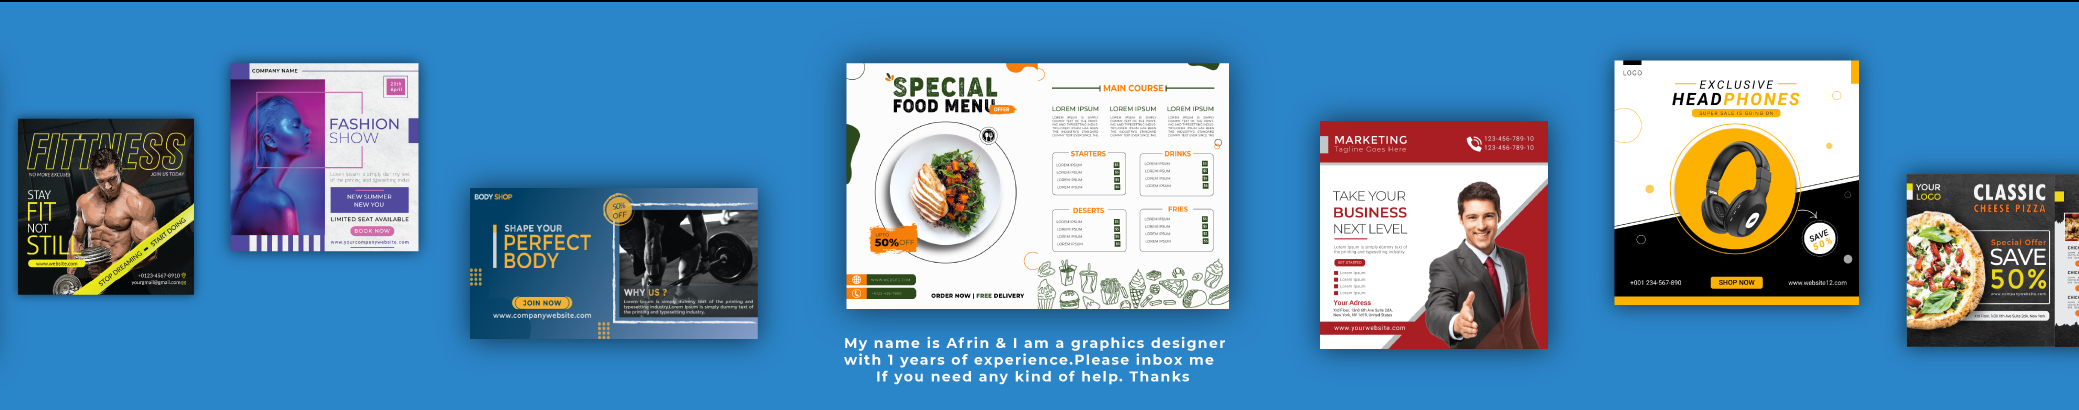 Designer Afrinn's profile banner